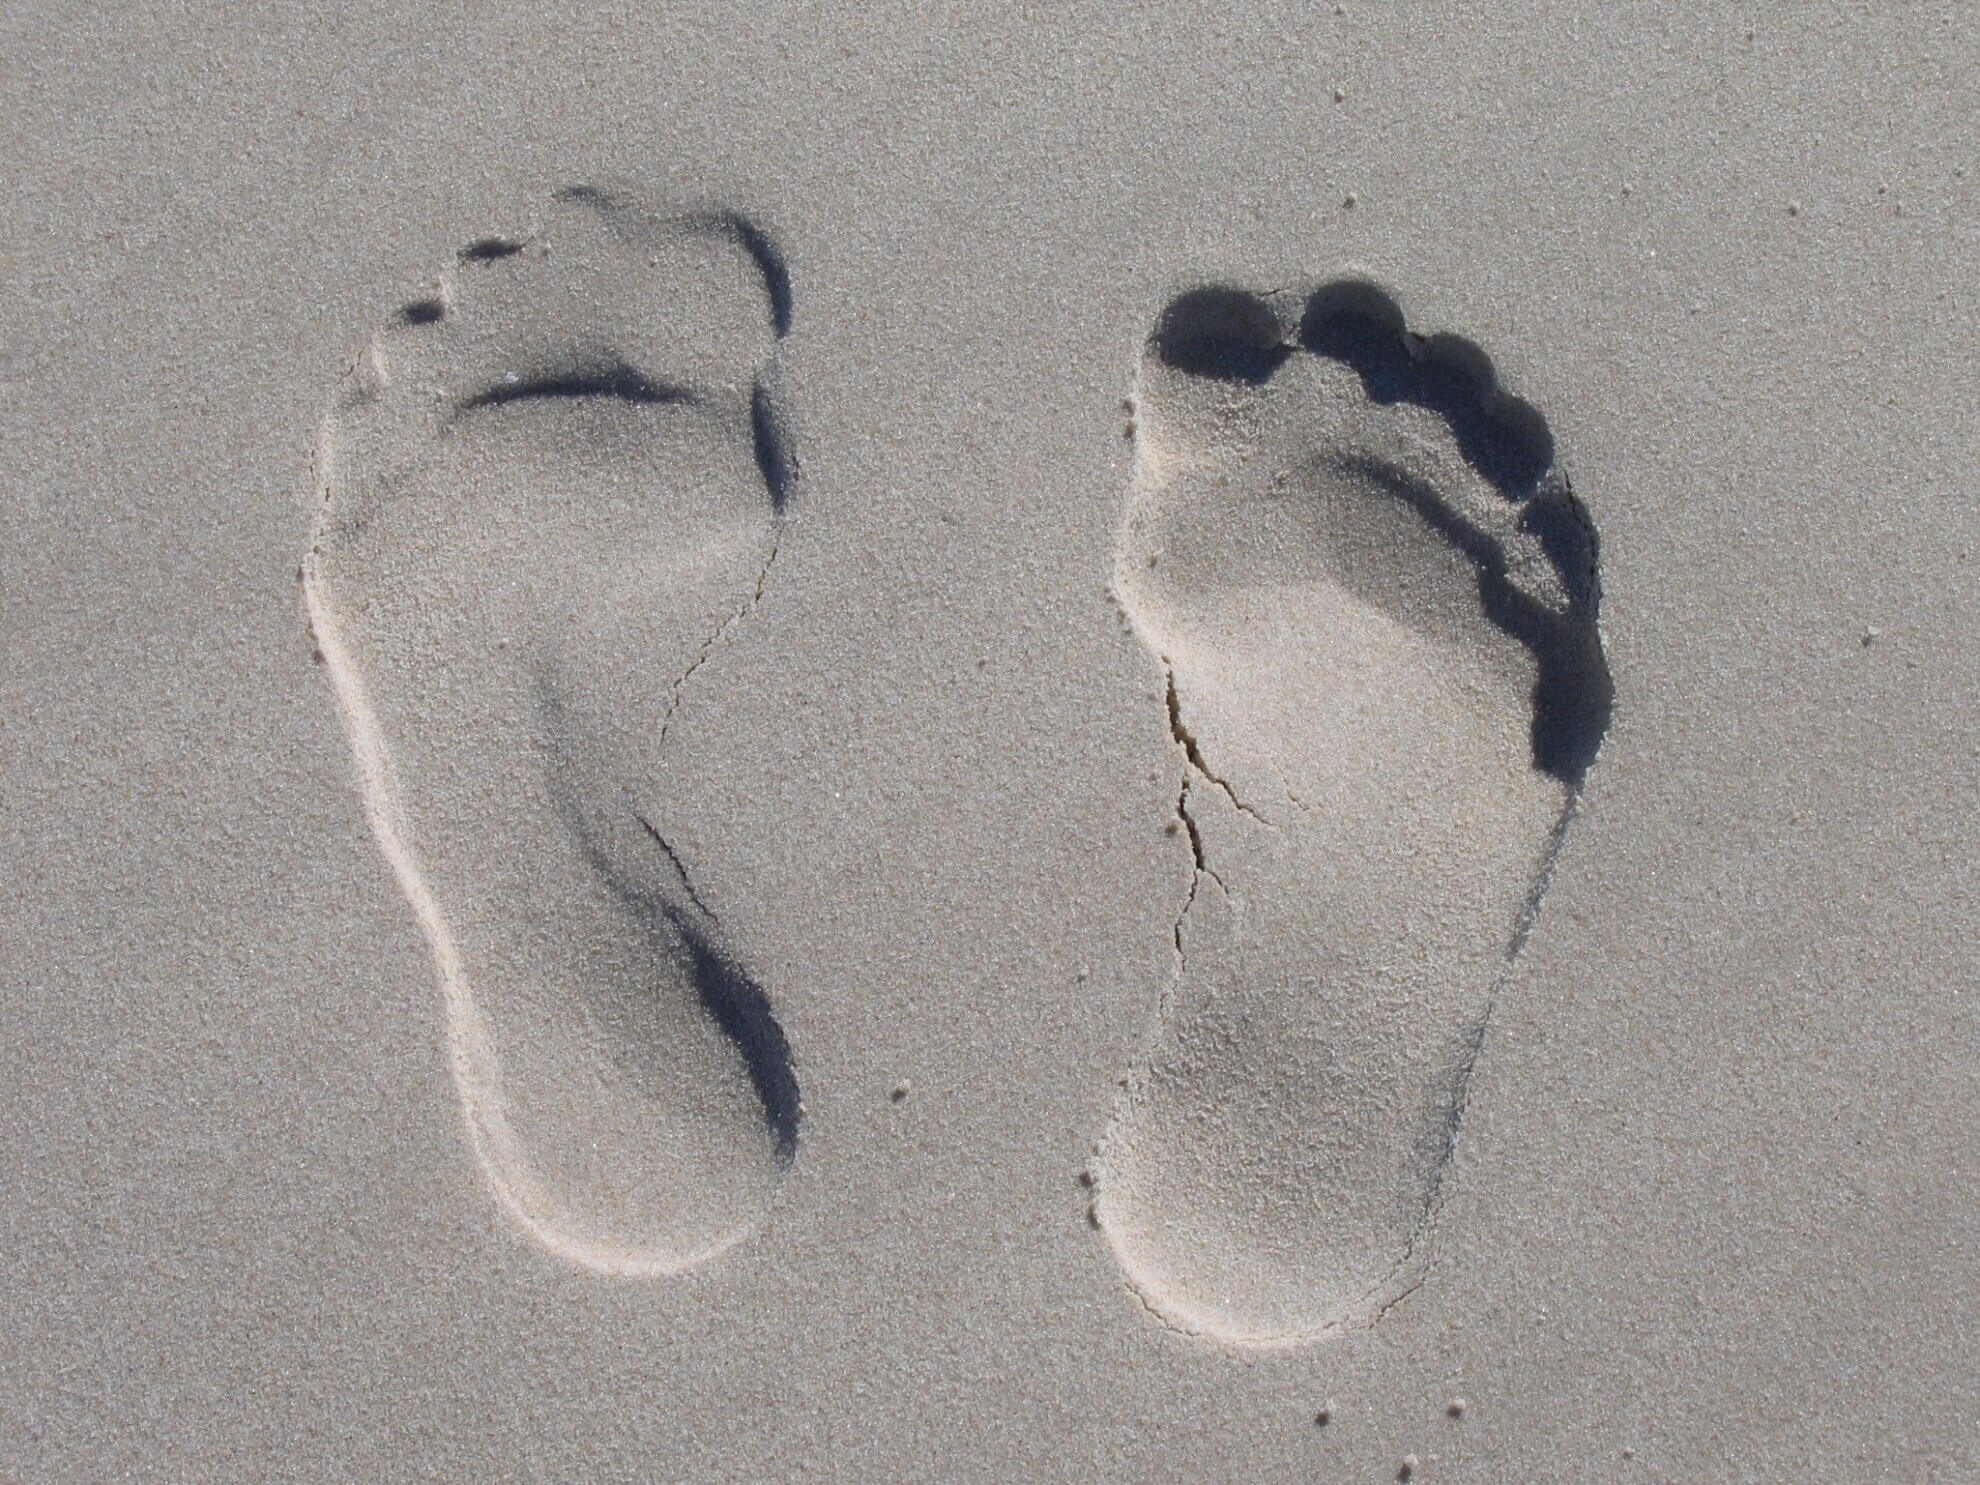 Fußabdrücke im Sand. Symbolisch für für das Impressum, das Eingedruckte/Aufgedruckte